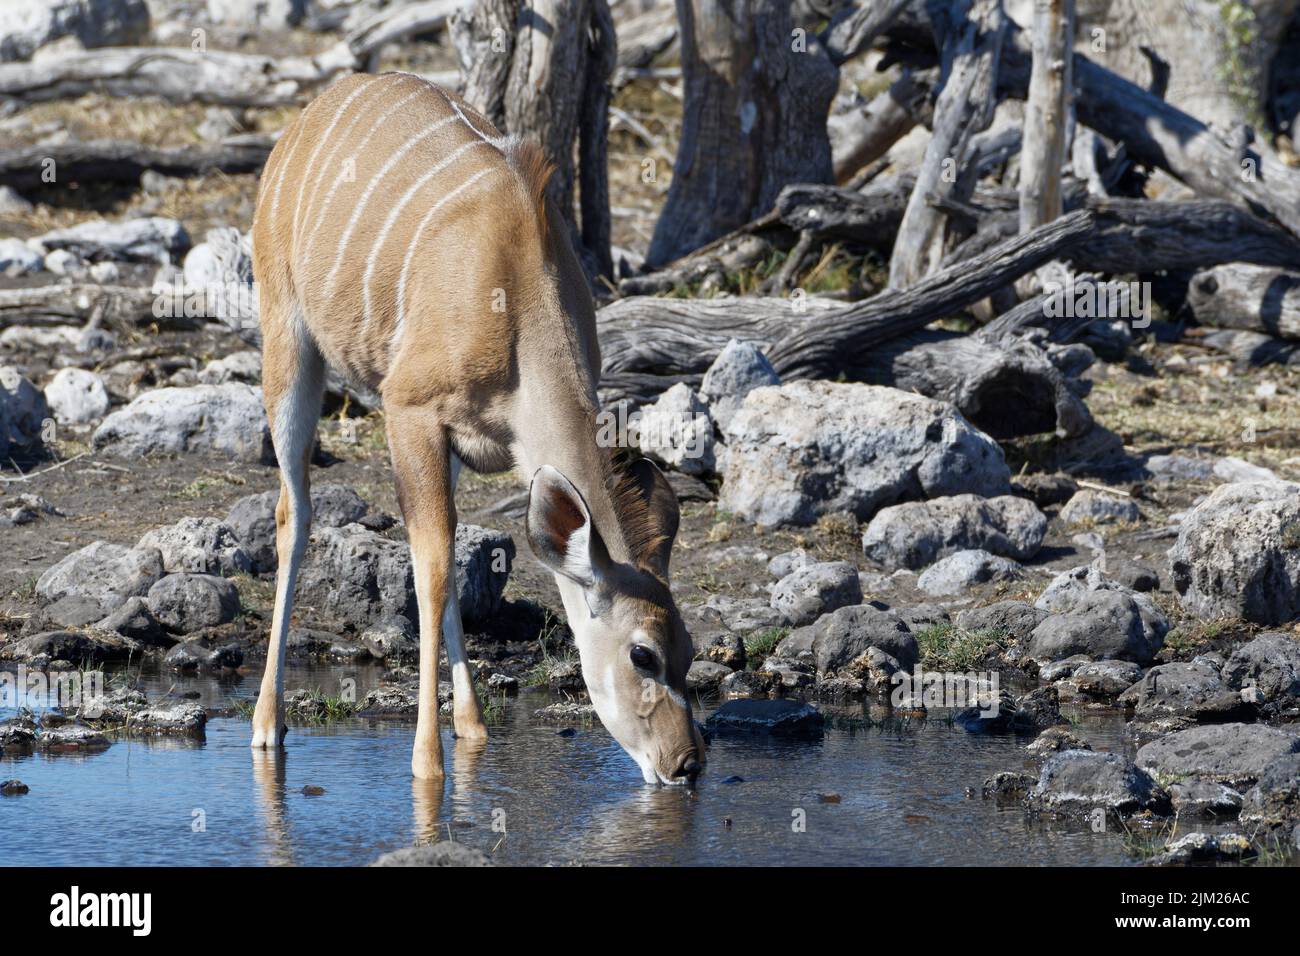 Greater kudu (Tragelaphus strepsiceros), female, in water, drinking at waterhole, Etosha National Park, Namibia, Africa Stock Photo